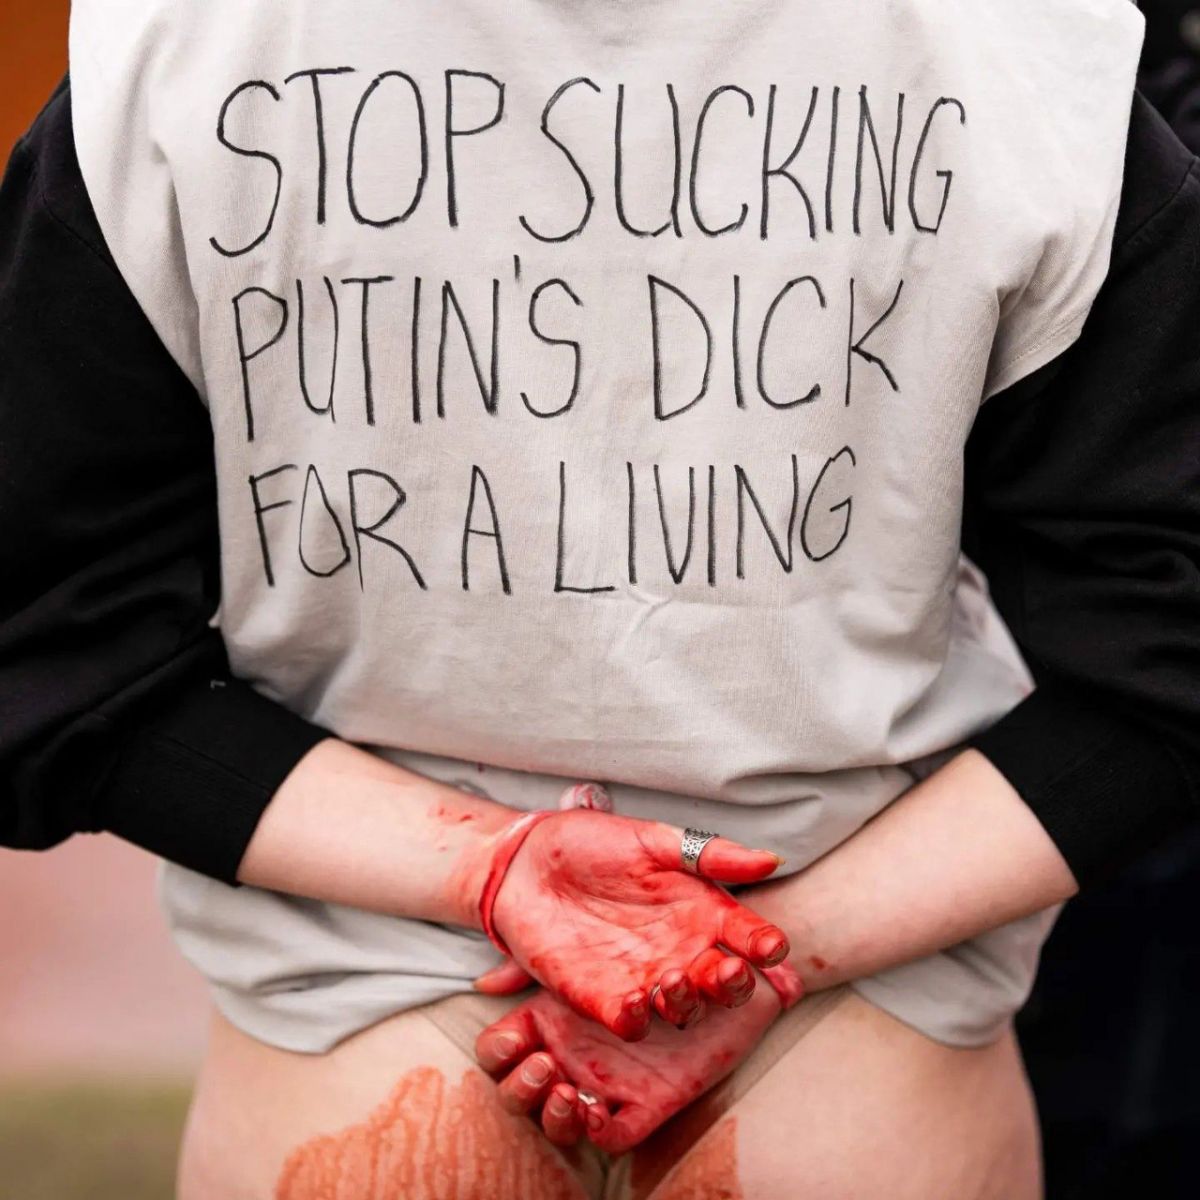 З мішками на головах і "кров'ю" на ногах - у Литві росіянам нагадали про зґвалтувань жінок в Україні